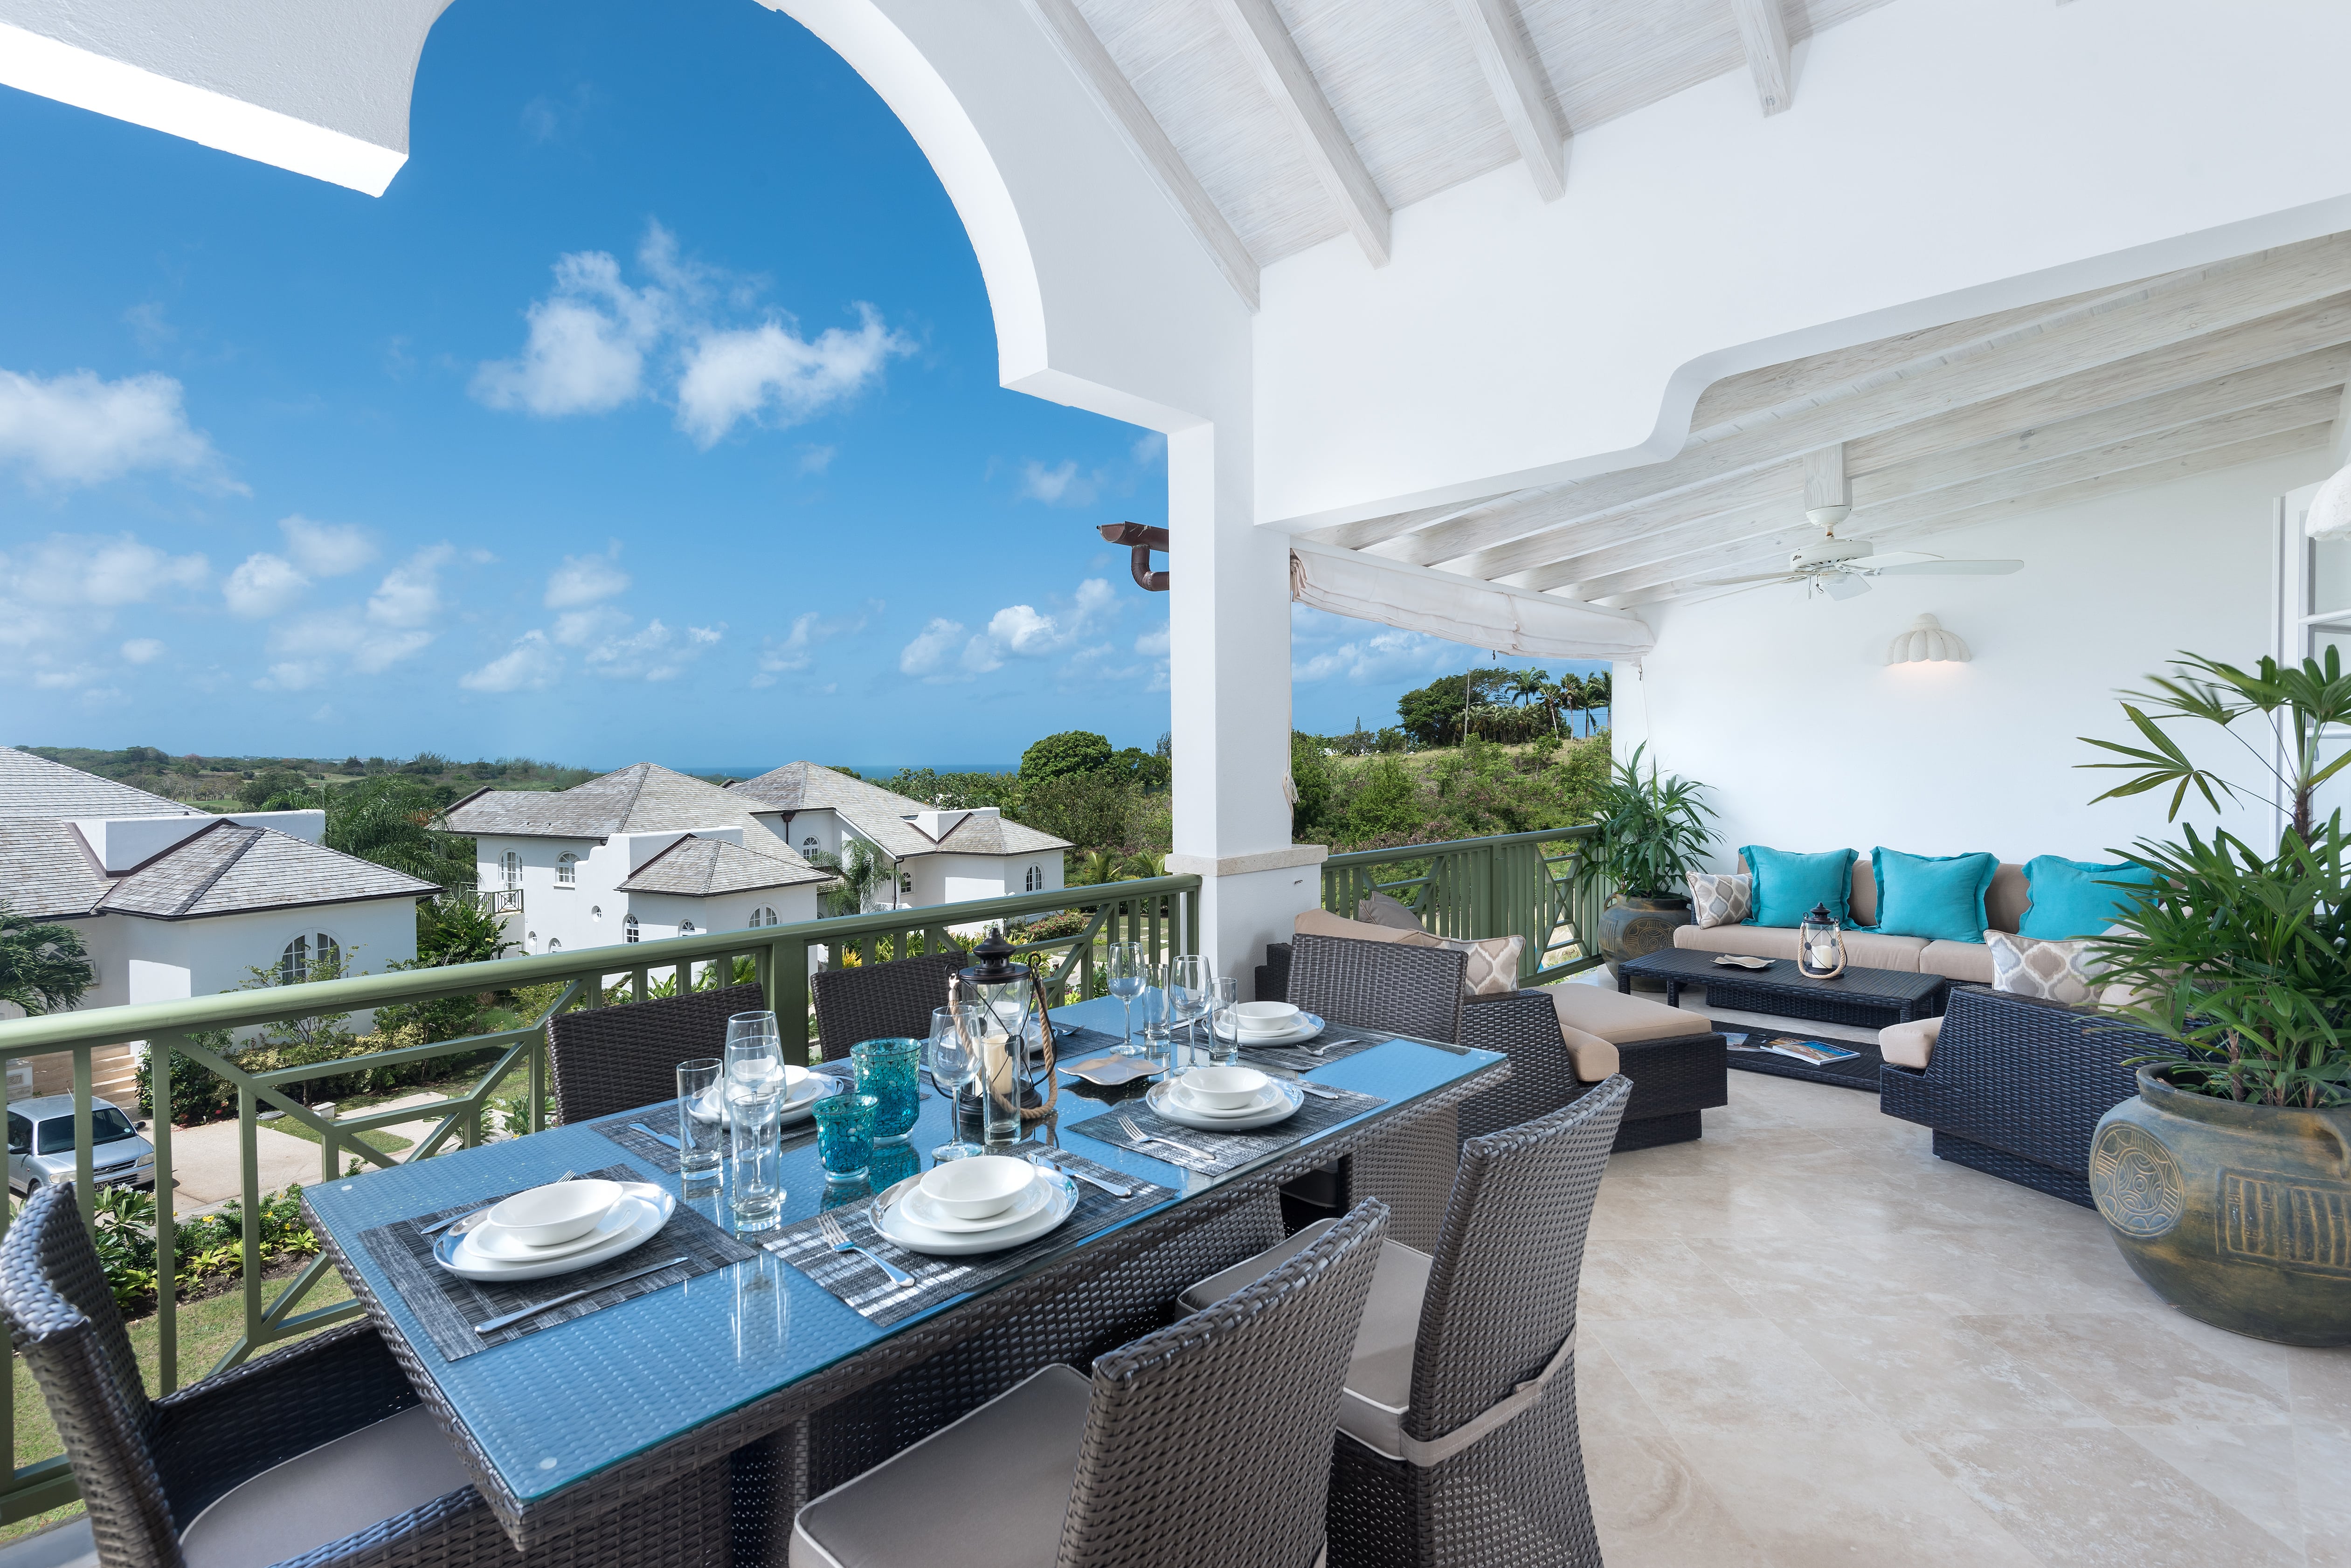 Xclusive Barbados,luxe vakantie, golf vakantie,cane, royal westmoreland,saint james, luxe golfvilla, vakantie barbados, 6 tot 8 personen, golfvilla, barbados vakantie